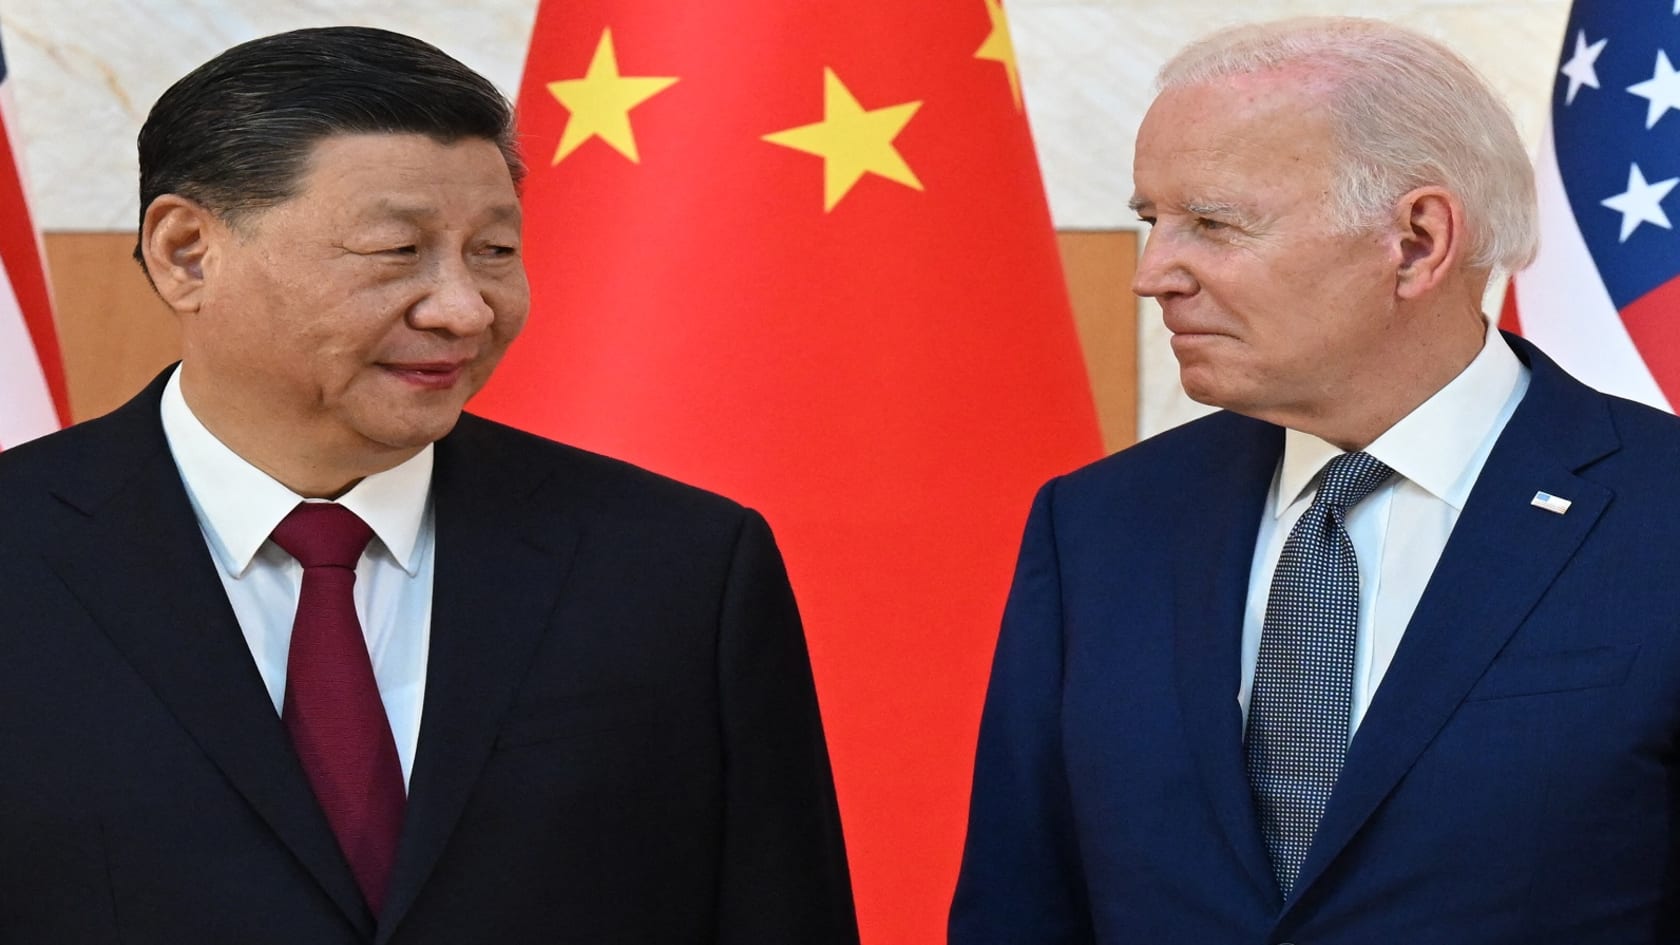 بايدن: أسعى لعدم تحول المنافسة مع الصين إلى نزاع